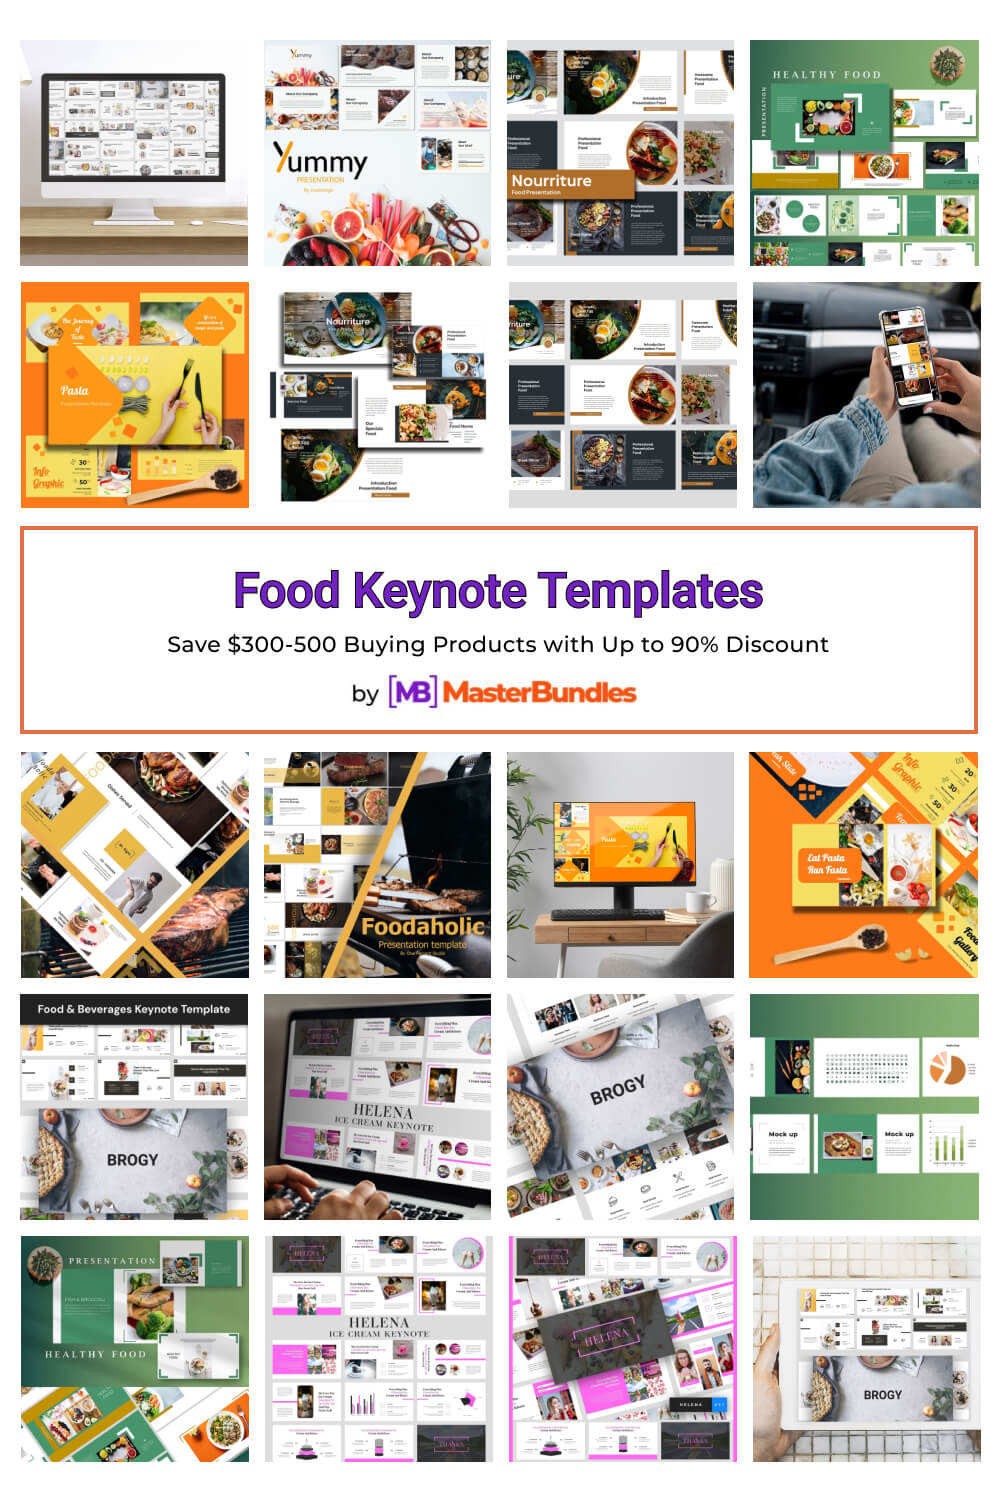 food keynote templates pinterest image.